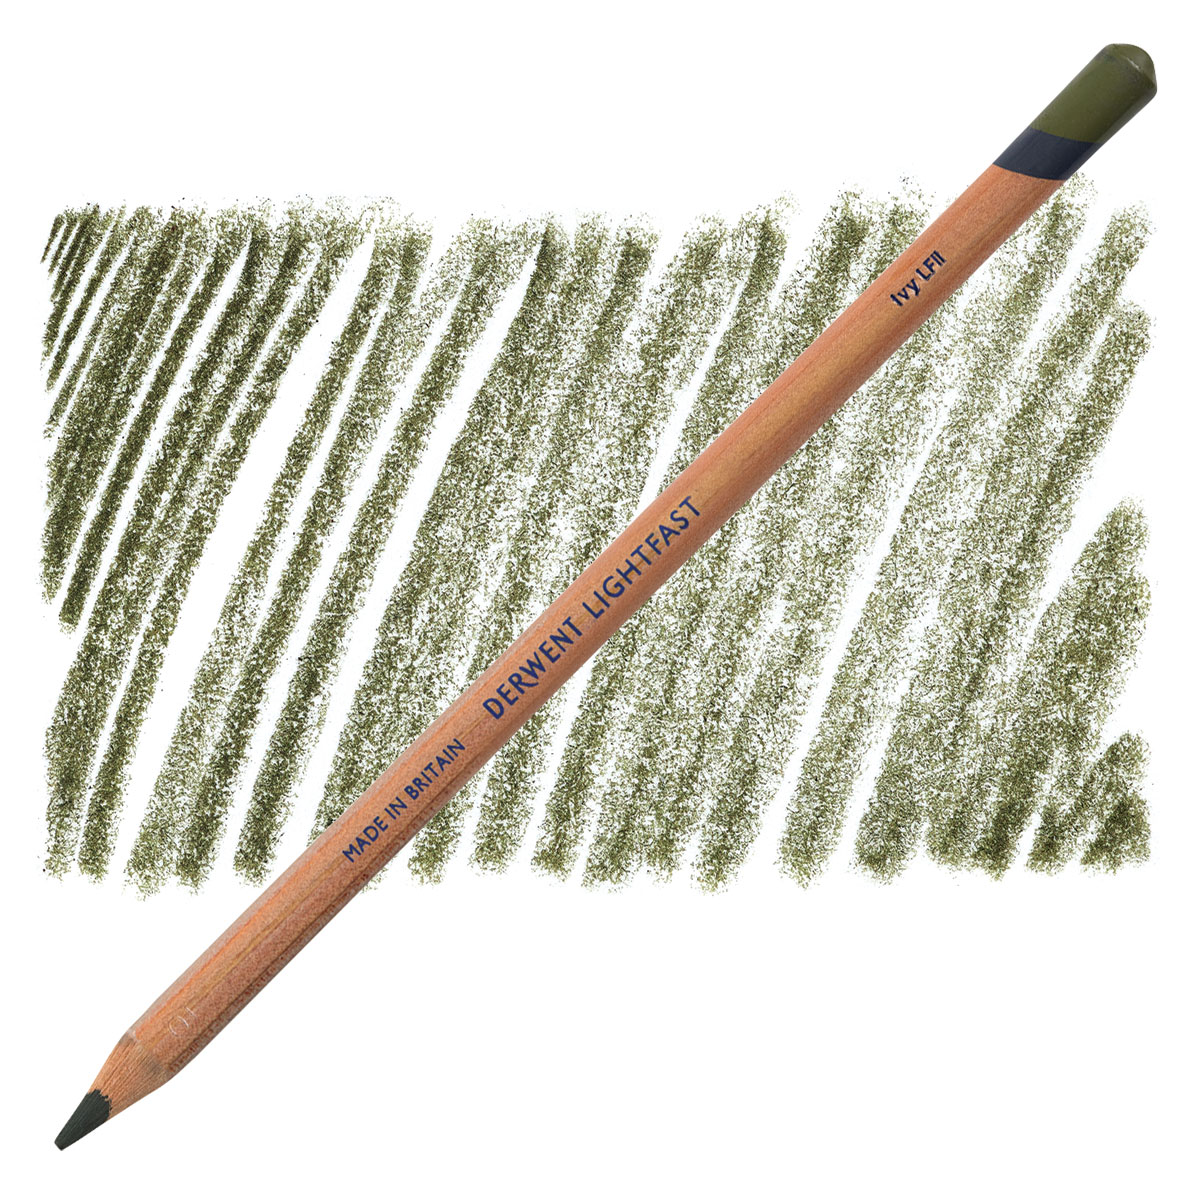 Derwent Lightfast Colored Pencils Wooden Box 100